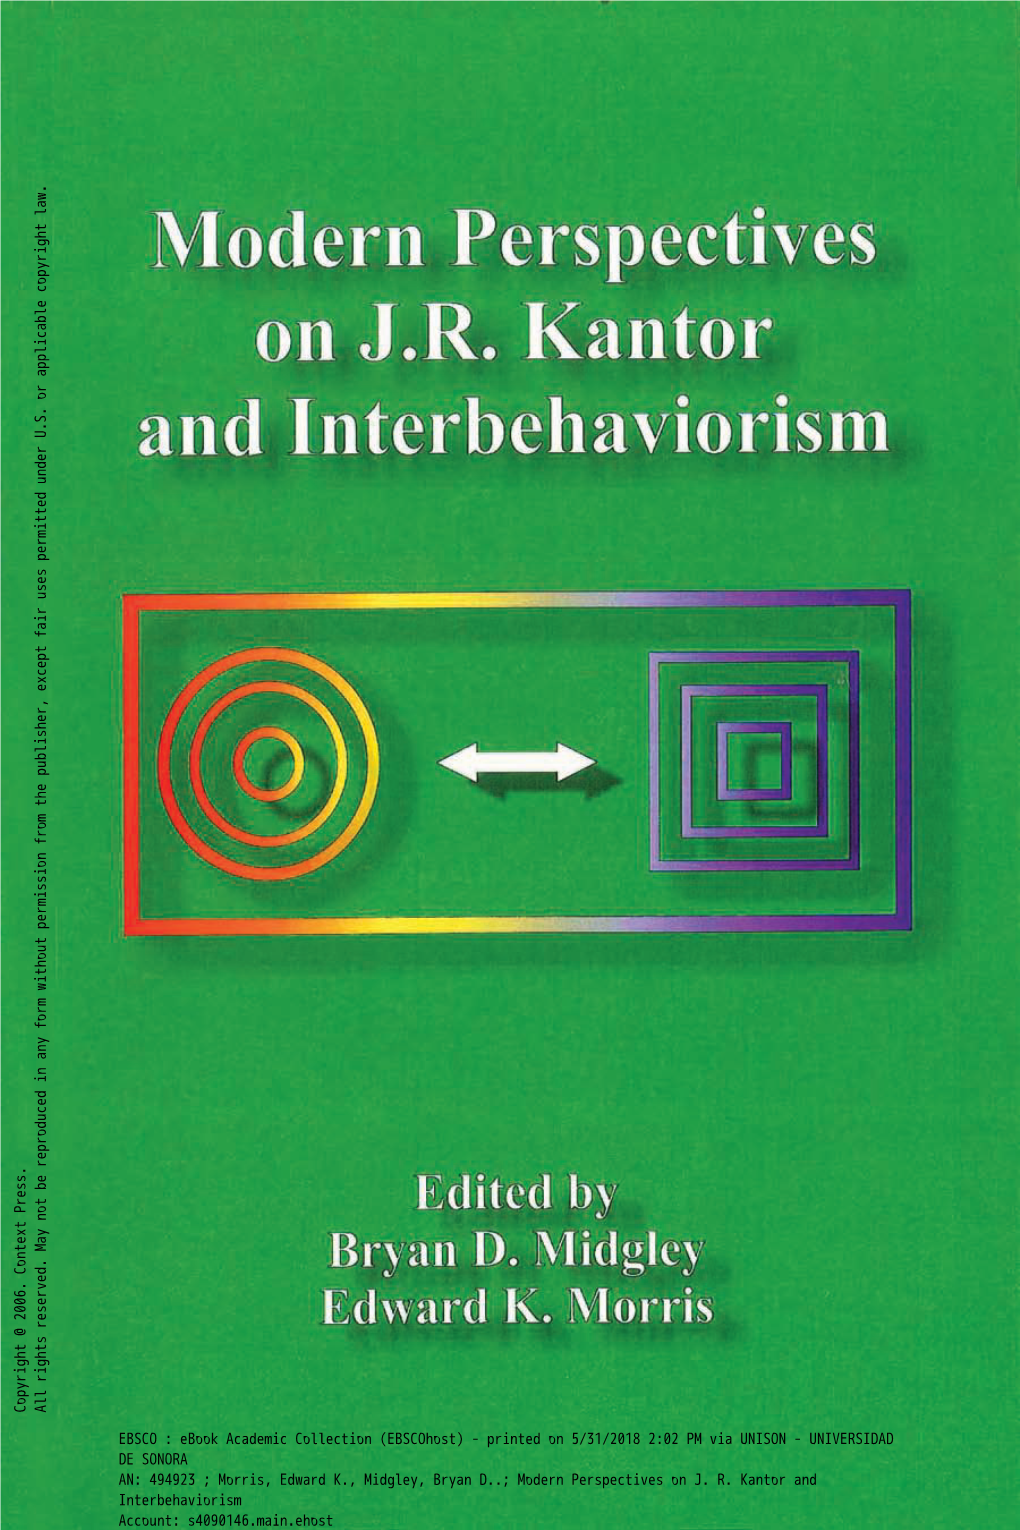 Modern Perspectives on JR Kantor and Interbehaviorism